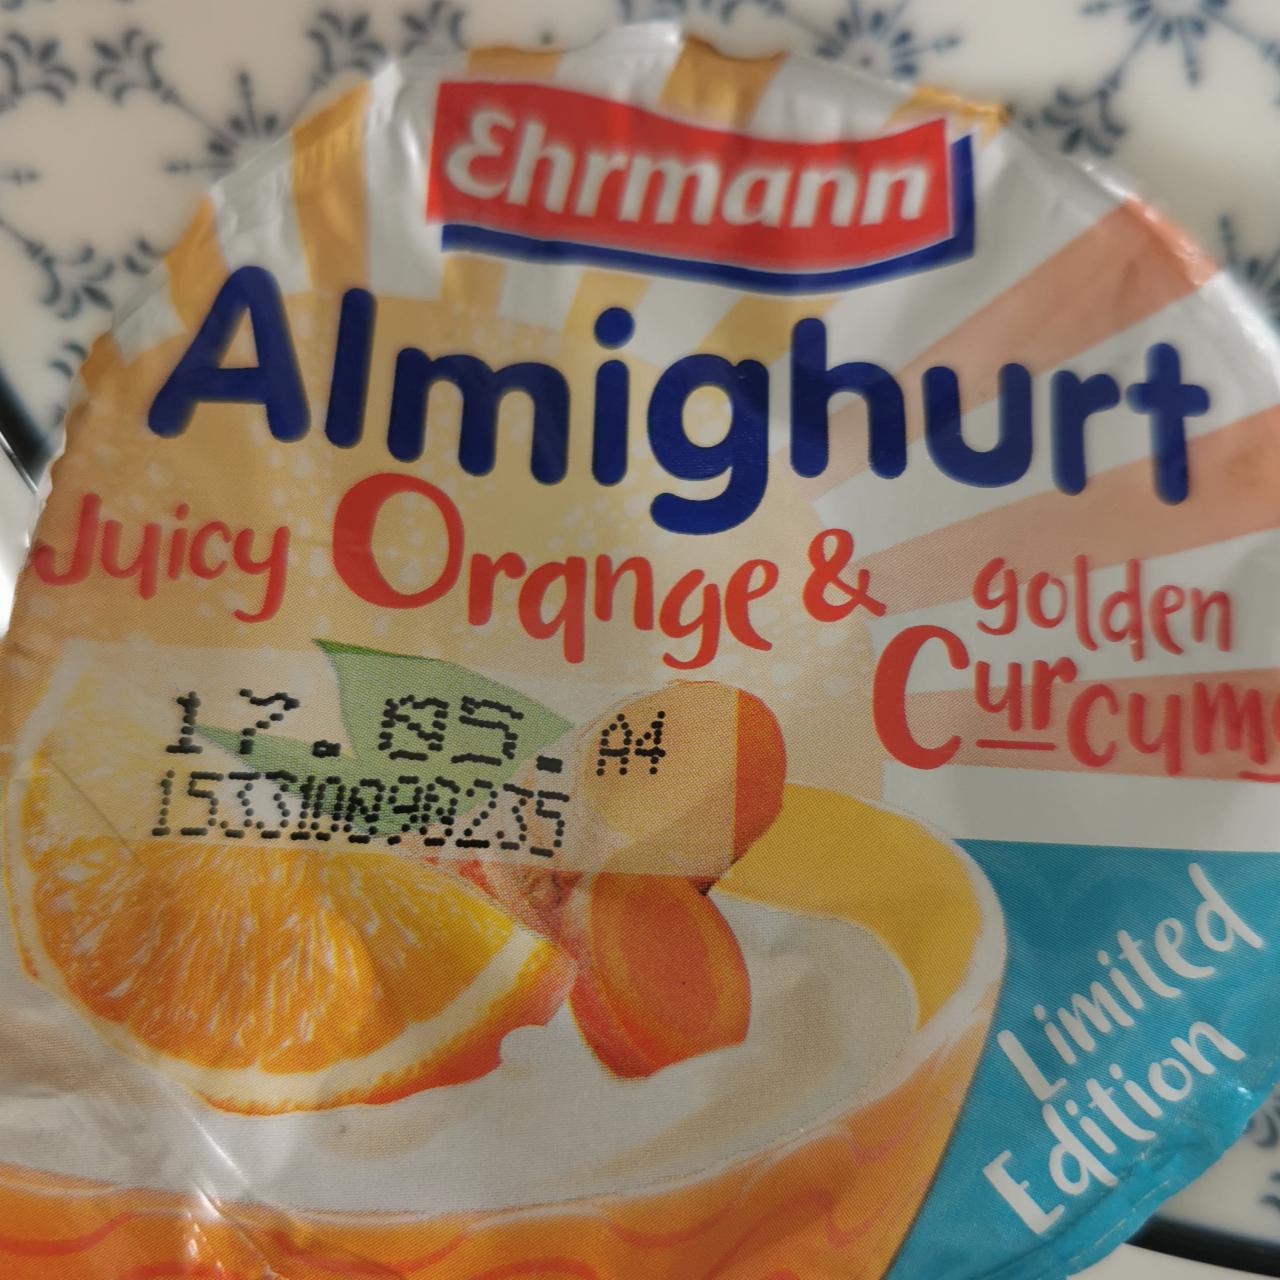 Fotografie - Almighurt Juicy Orange & Golden Curcuma Ehrmann